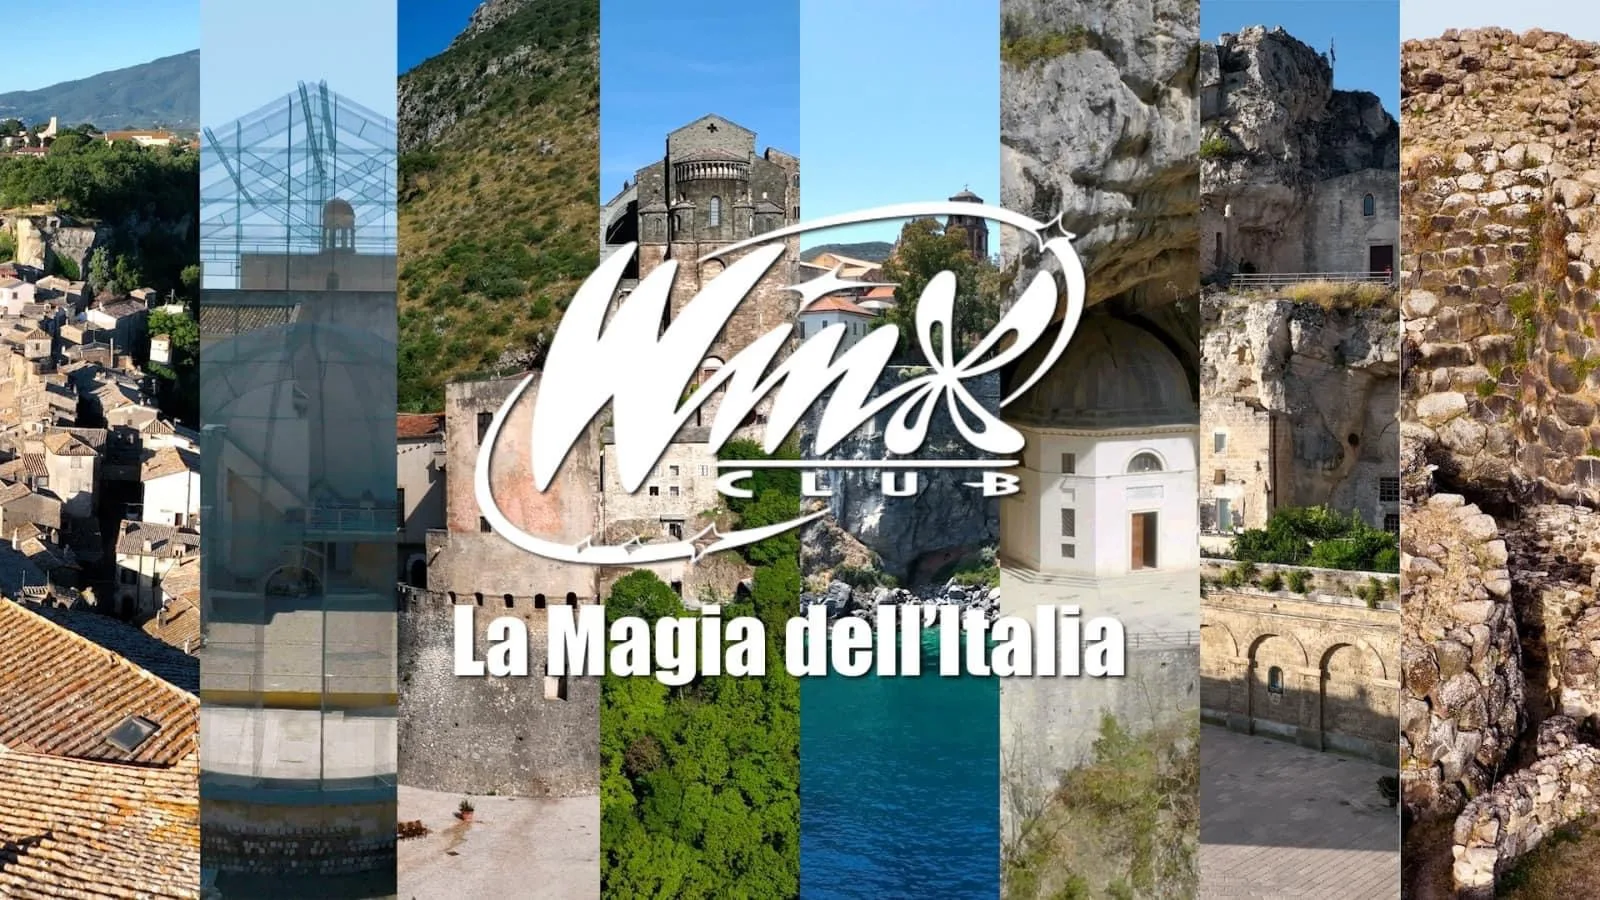 Winx Club, a magia da Itália: também existe Manfredonia